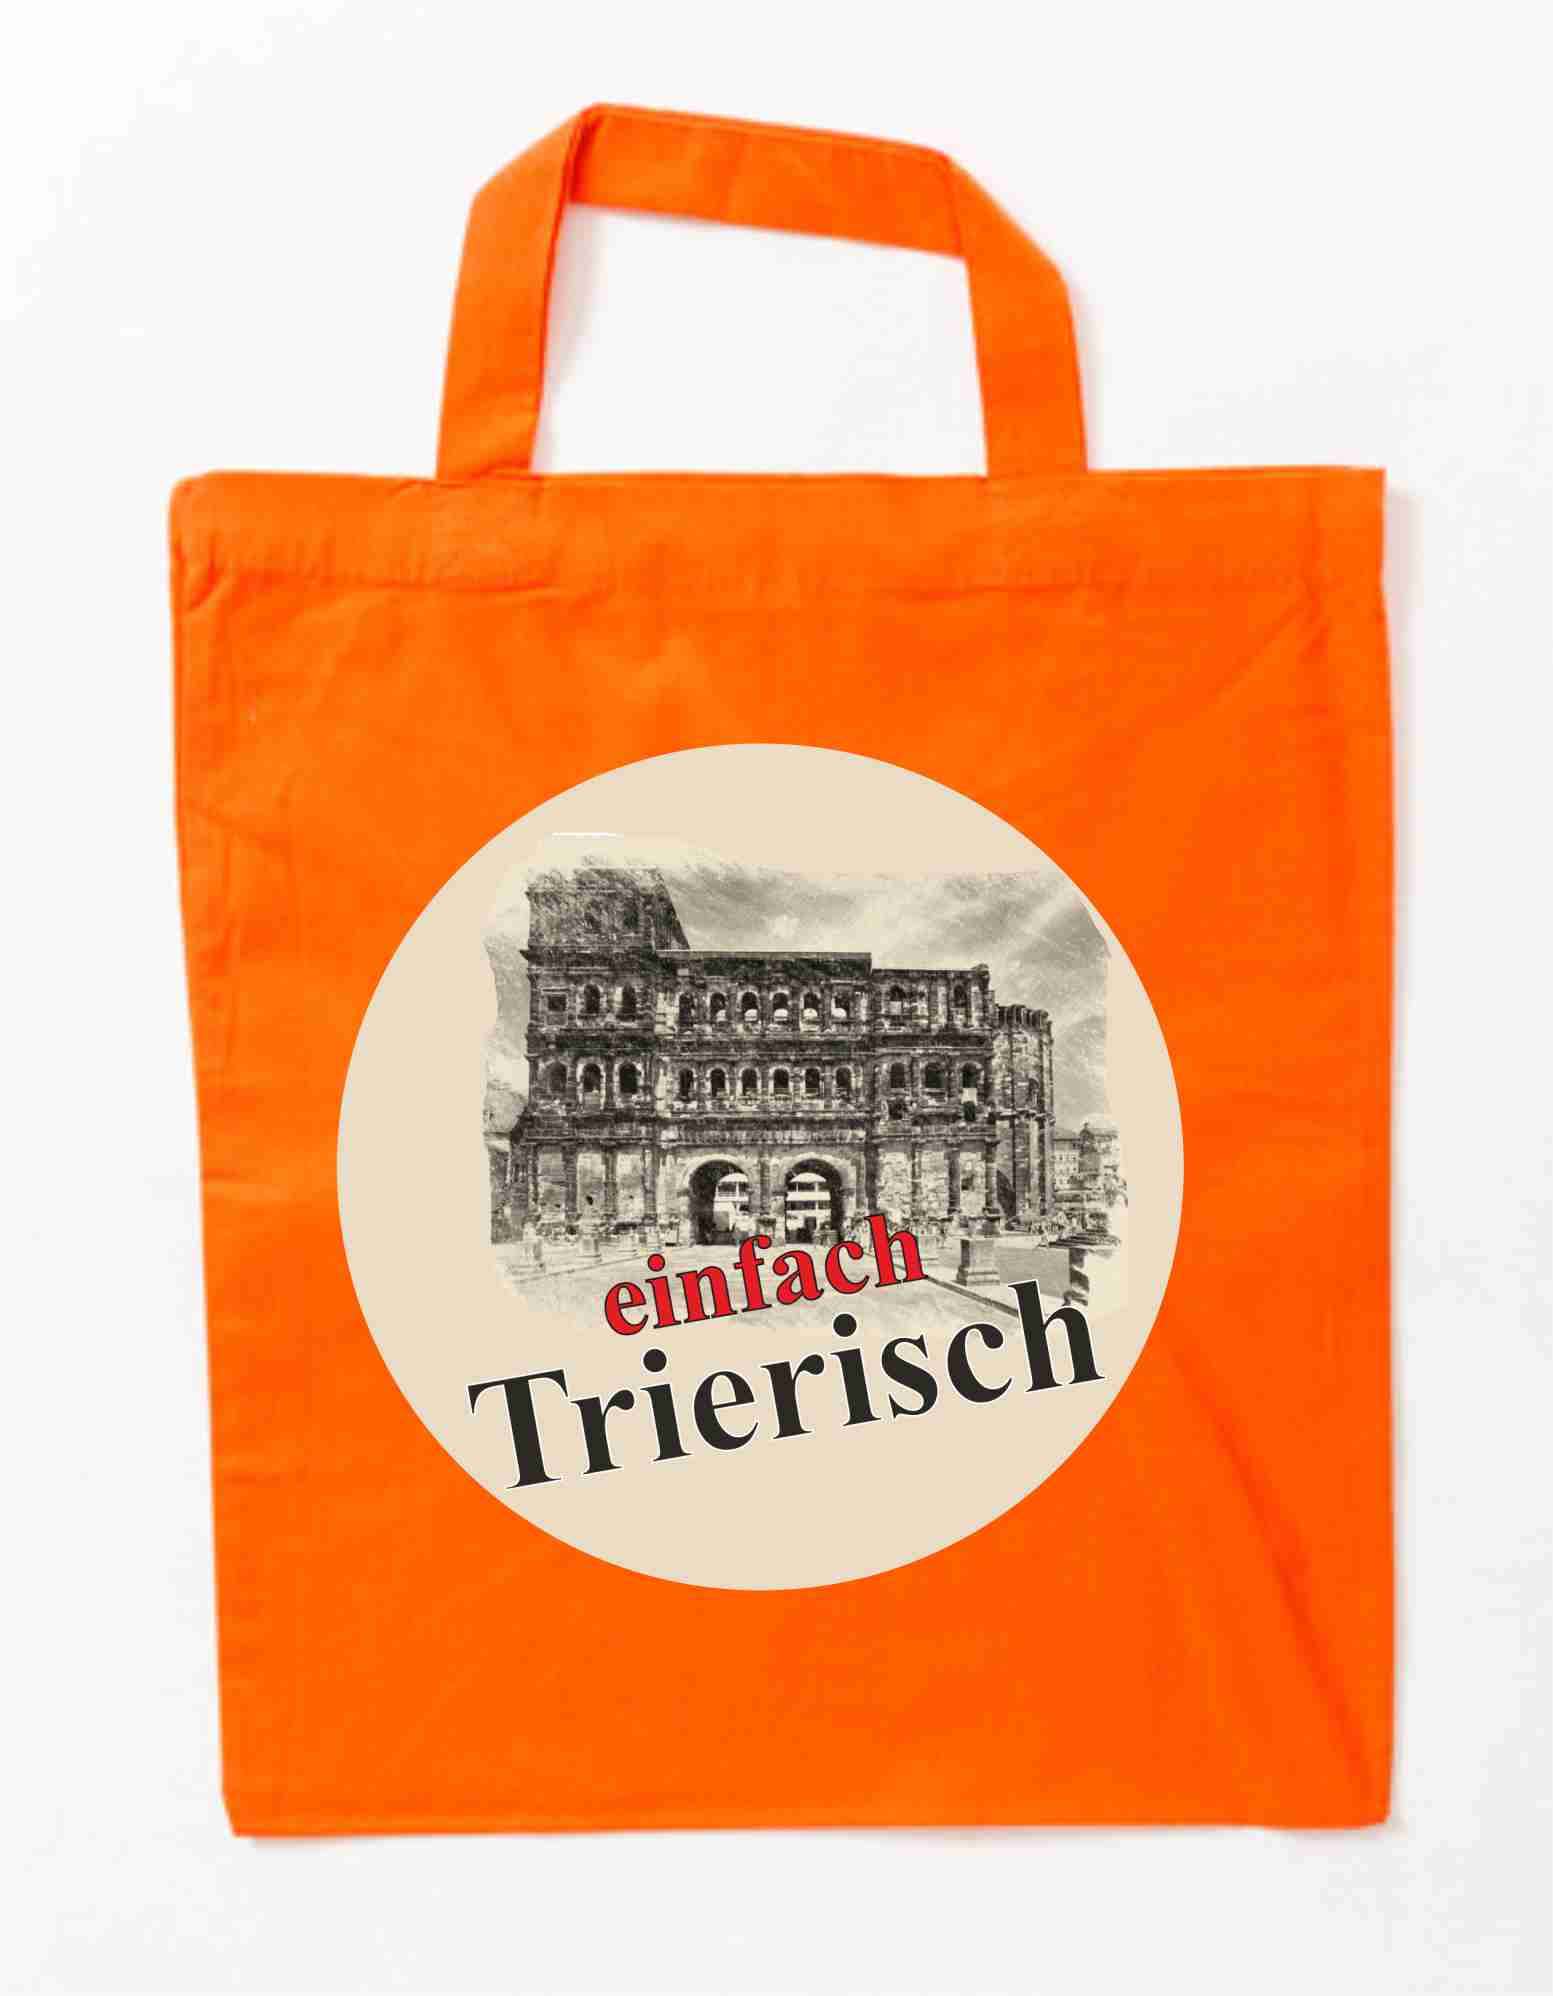 Trier Baumwollbeutel auch zum selbst gestalten bei tex-druck.de